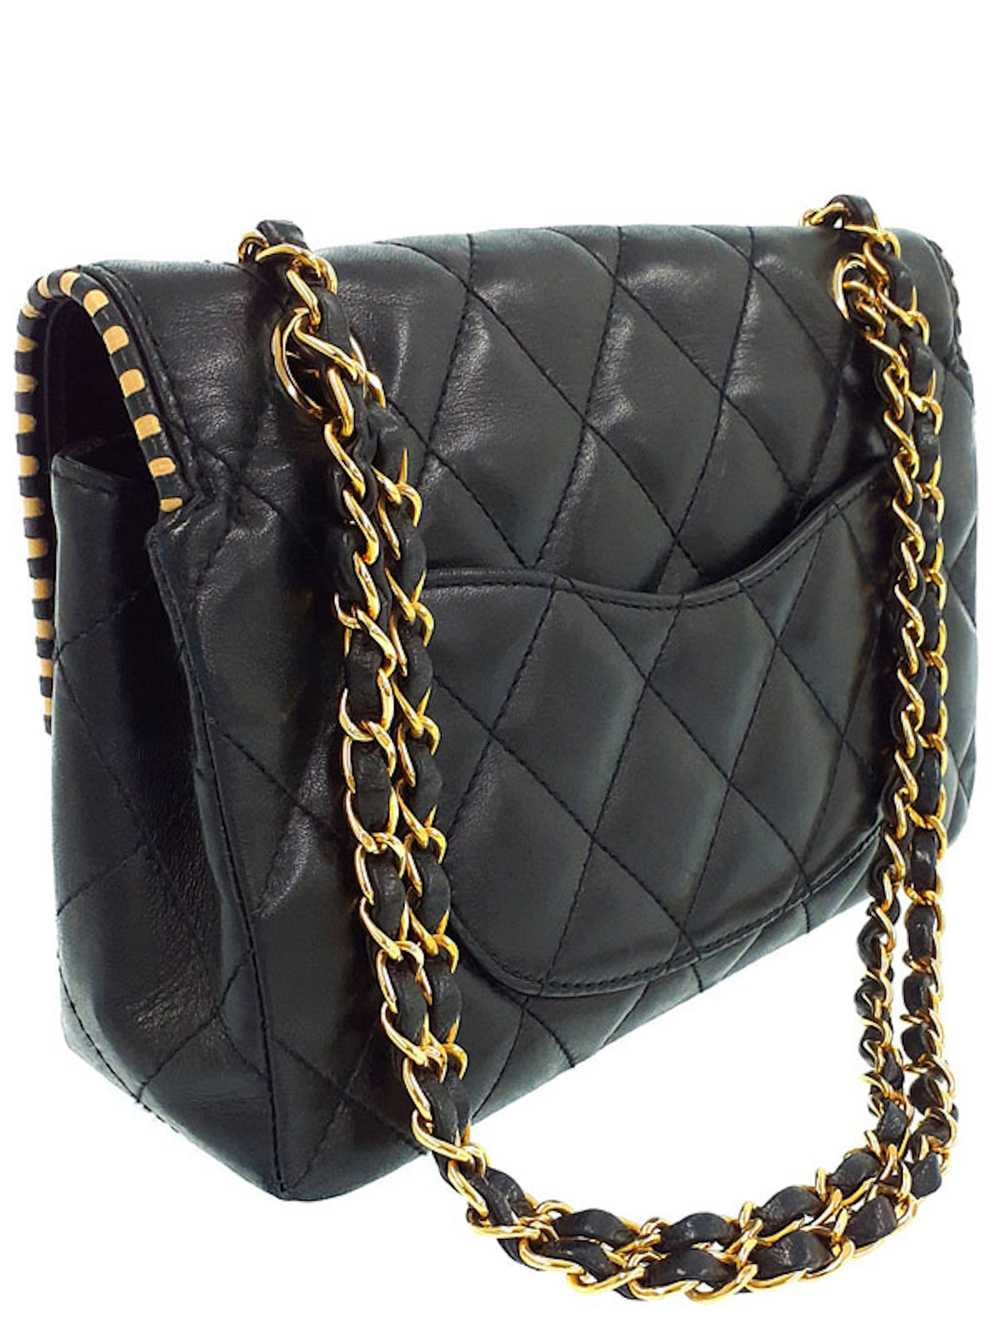 Chanel Chanel Matelasse Chain Shoulder Bag Black - image 2